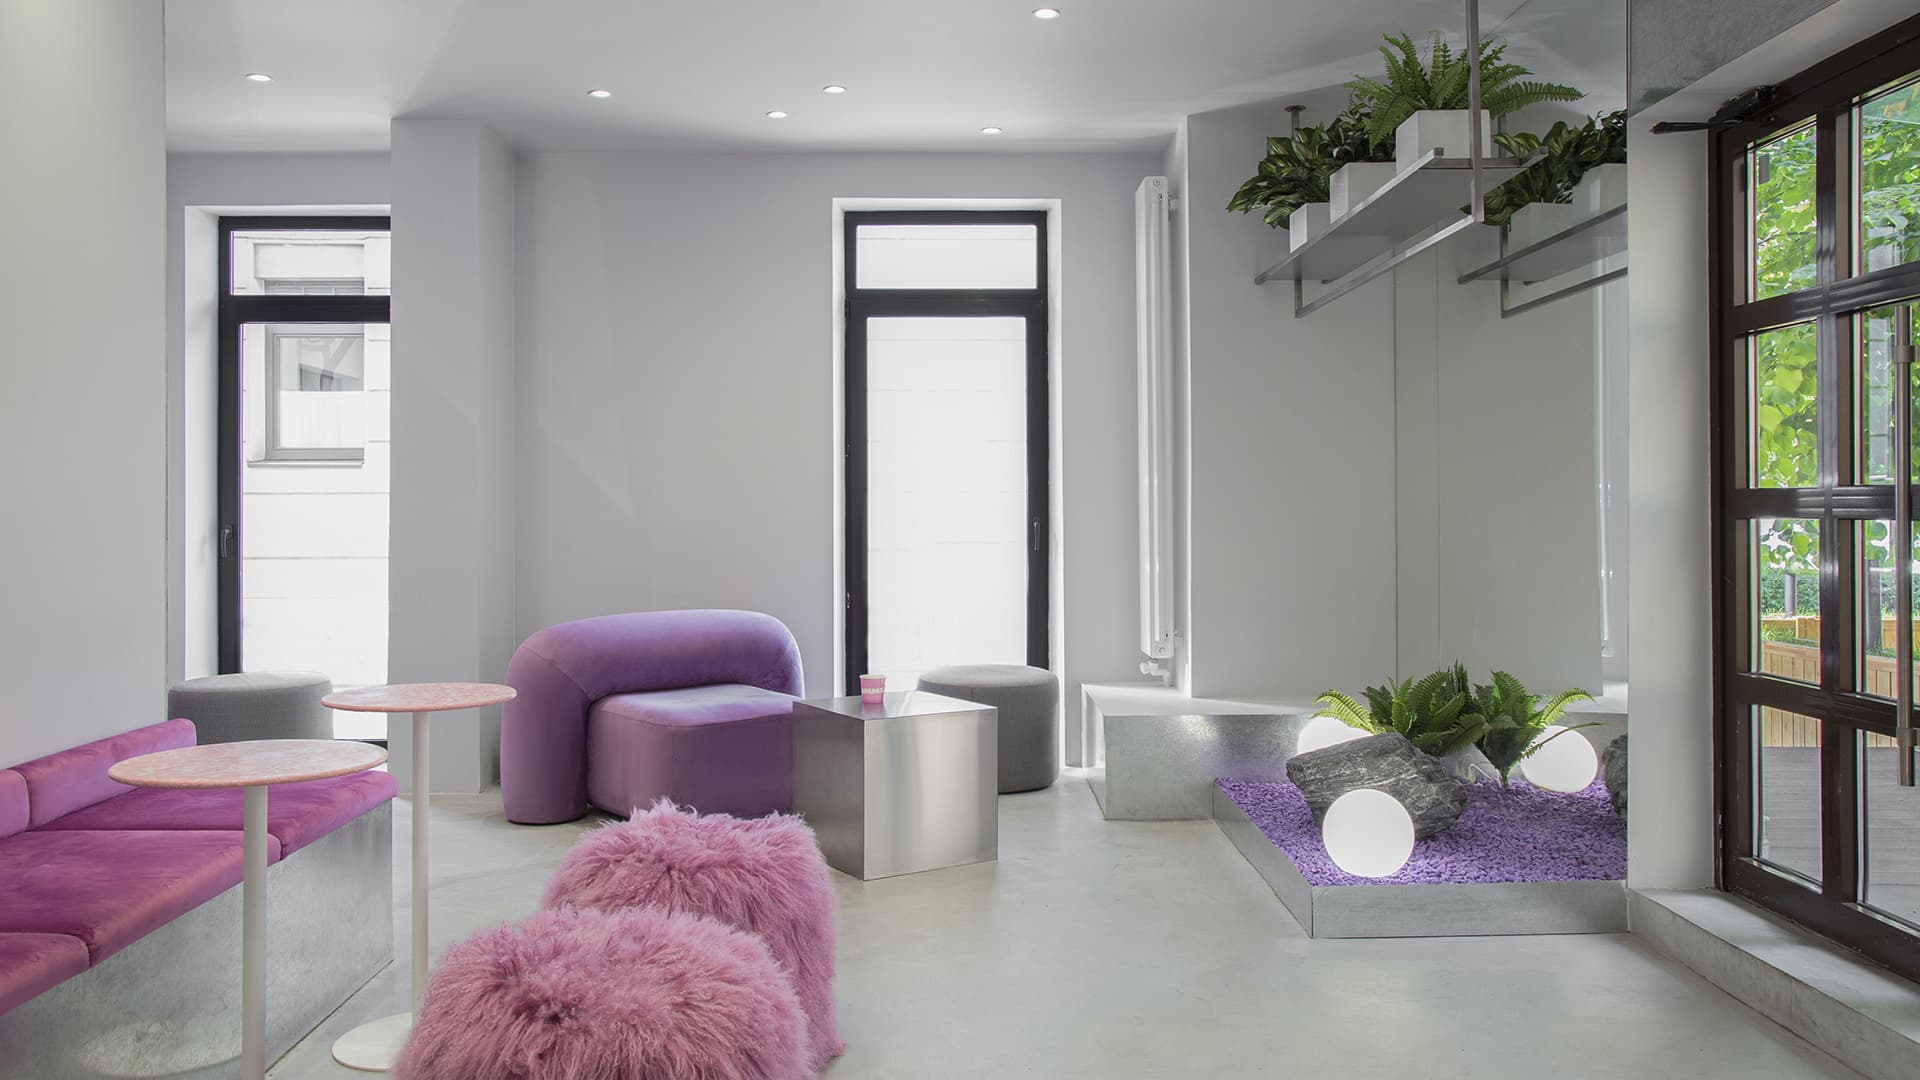 Фиолетовый мех, сталь и живые растения в эпатажном интерьере шоурума – проект KIDZ Design